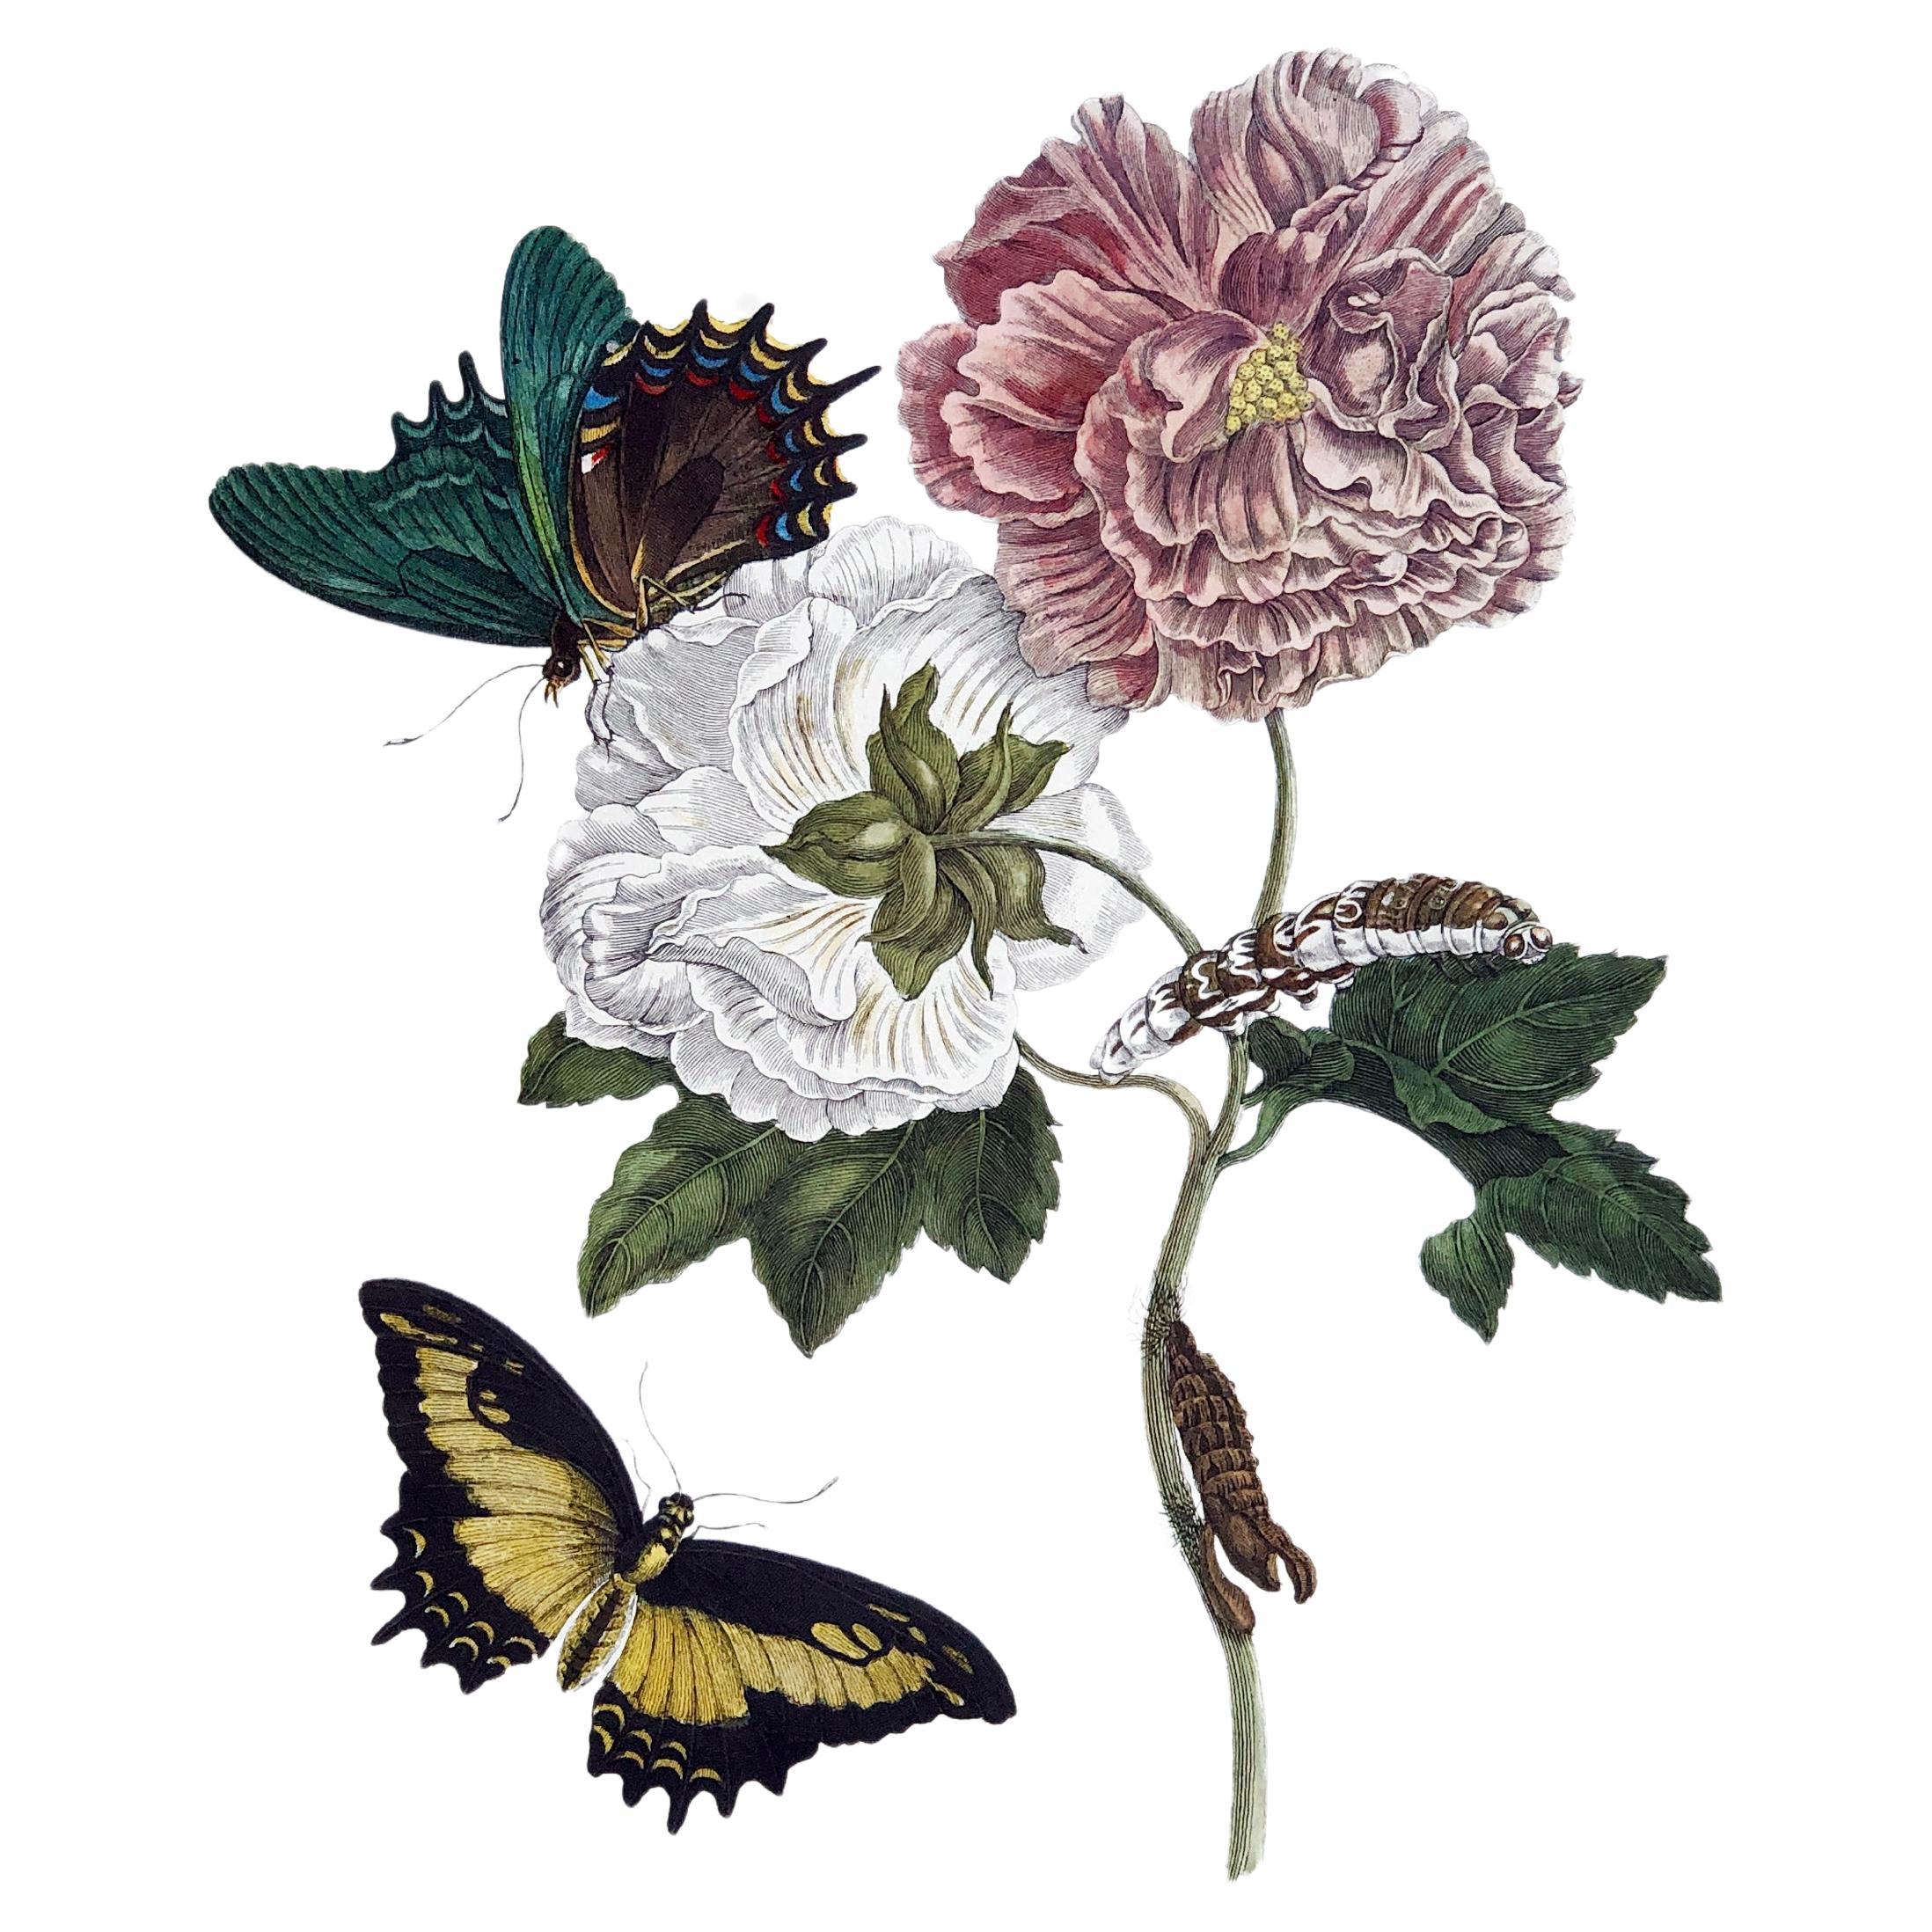 Maria Sibylla Merian - P. Sluyter - Fleurs d'hibiscus et queue de cygne Nr.31 en vente